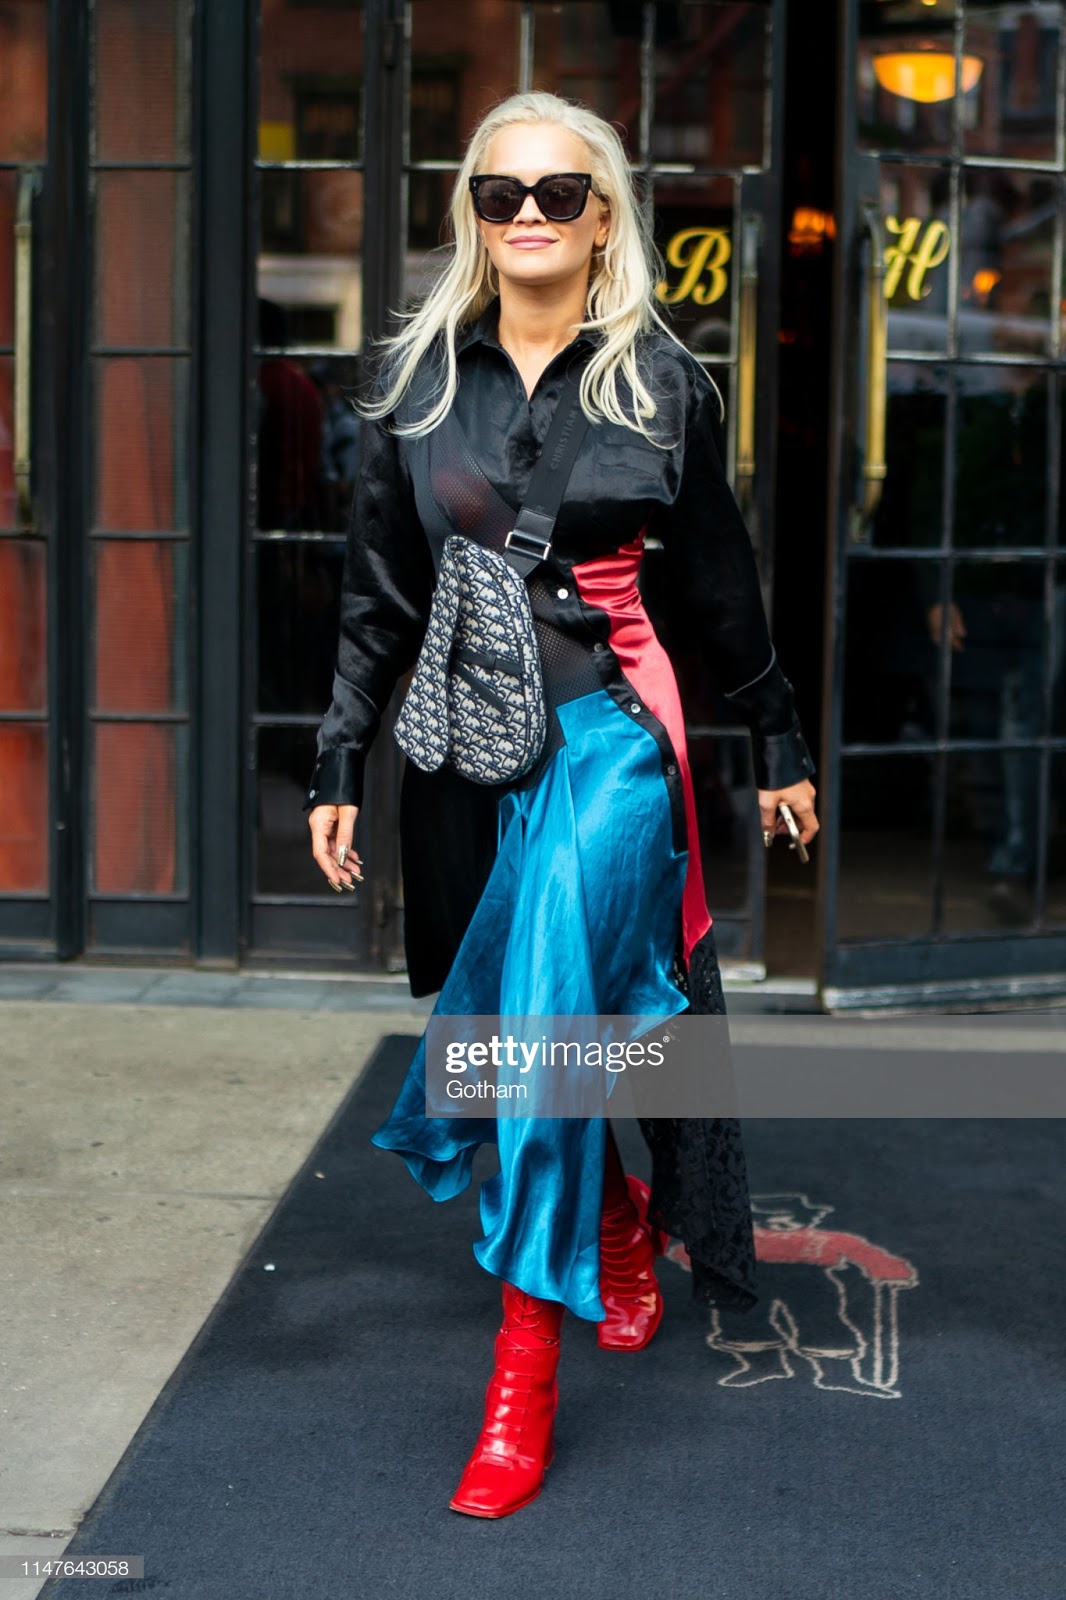 Ladies in Satin Blouses: Rita Ora - black satin blouse